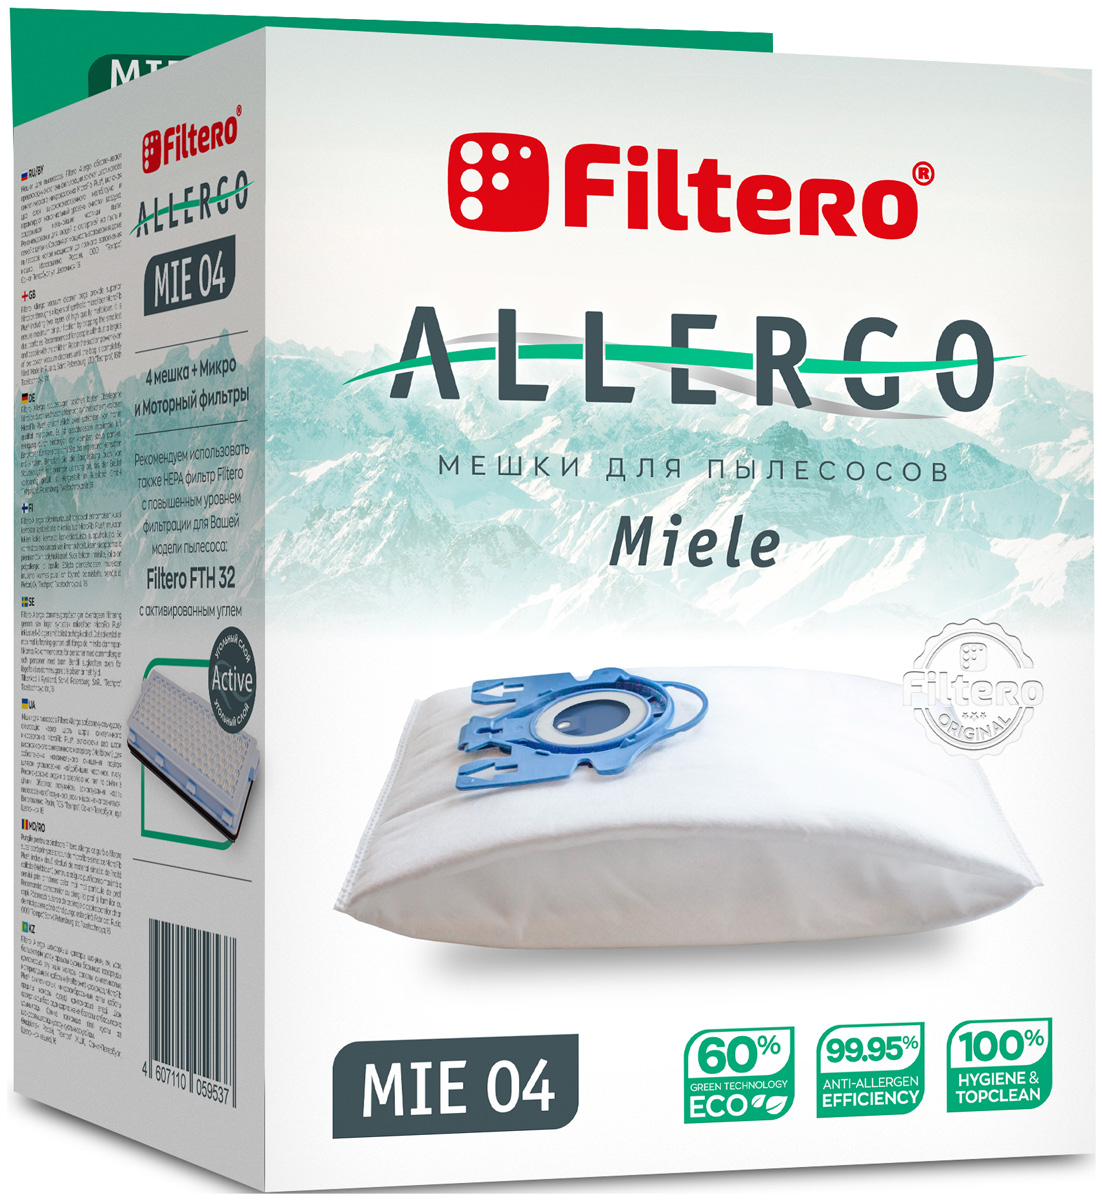 Пылесборники Filtero MIE 04 Allergo 4шт. + моторный фильтр и микрофильтр lady gregory s complete irish mythology